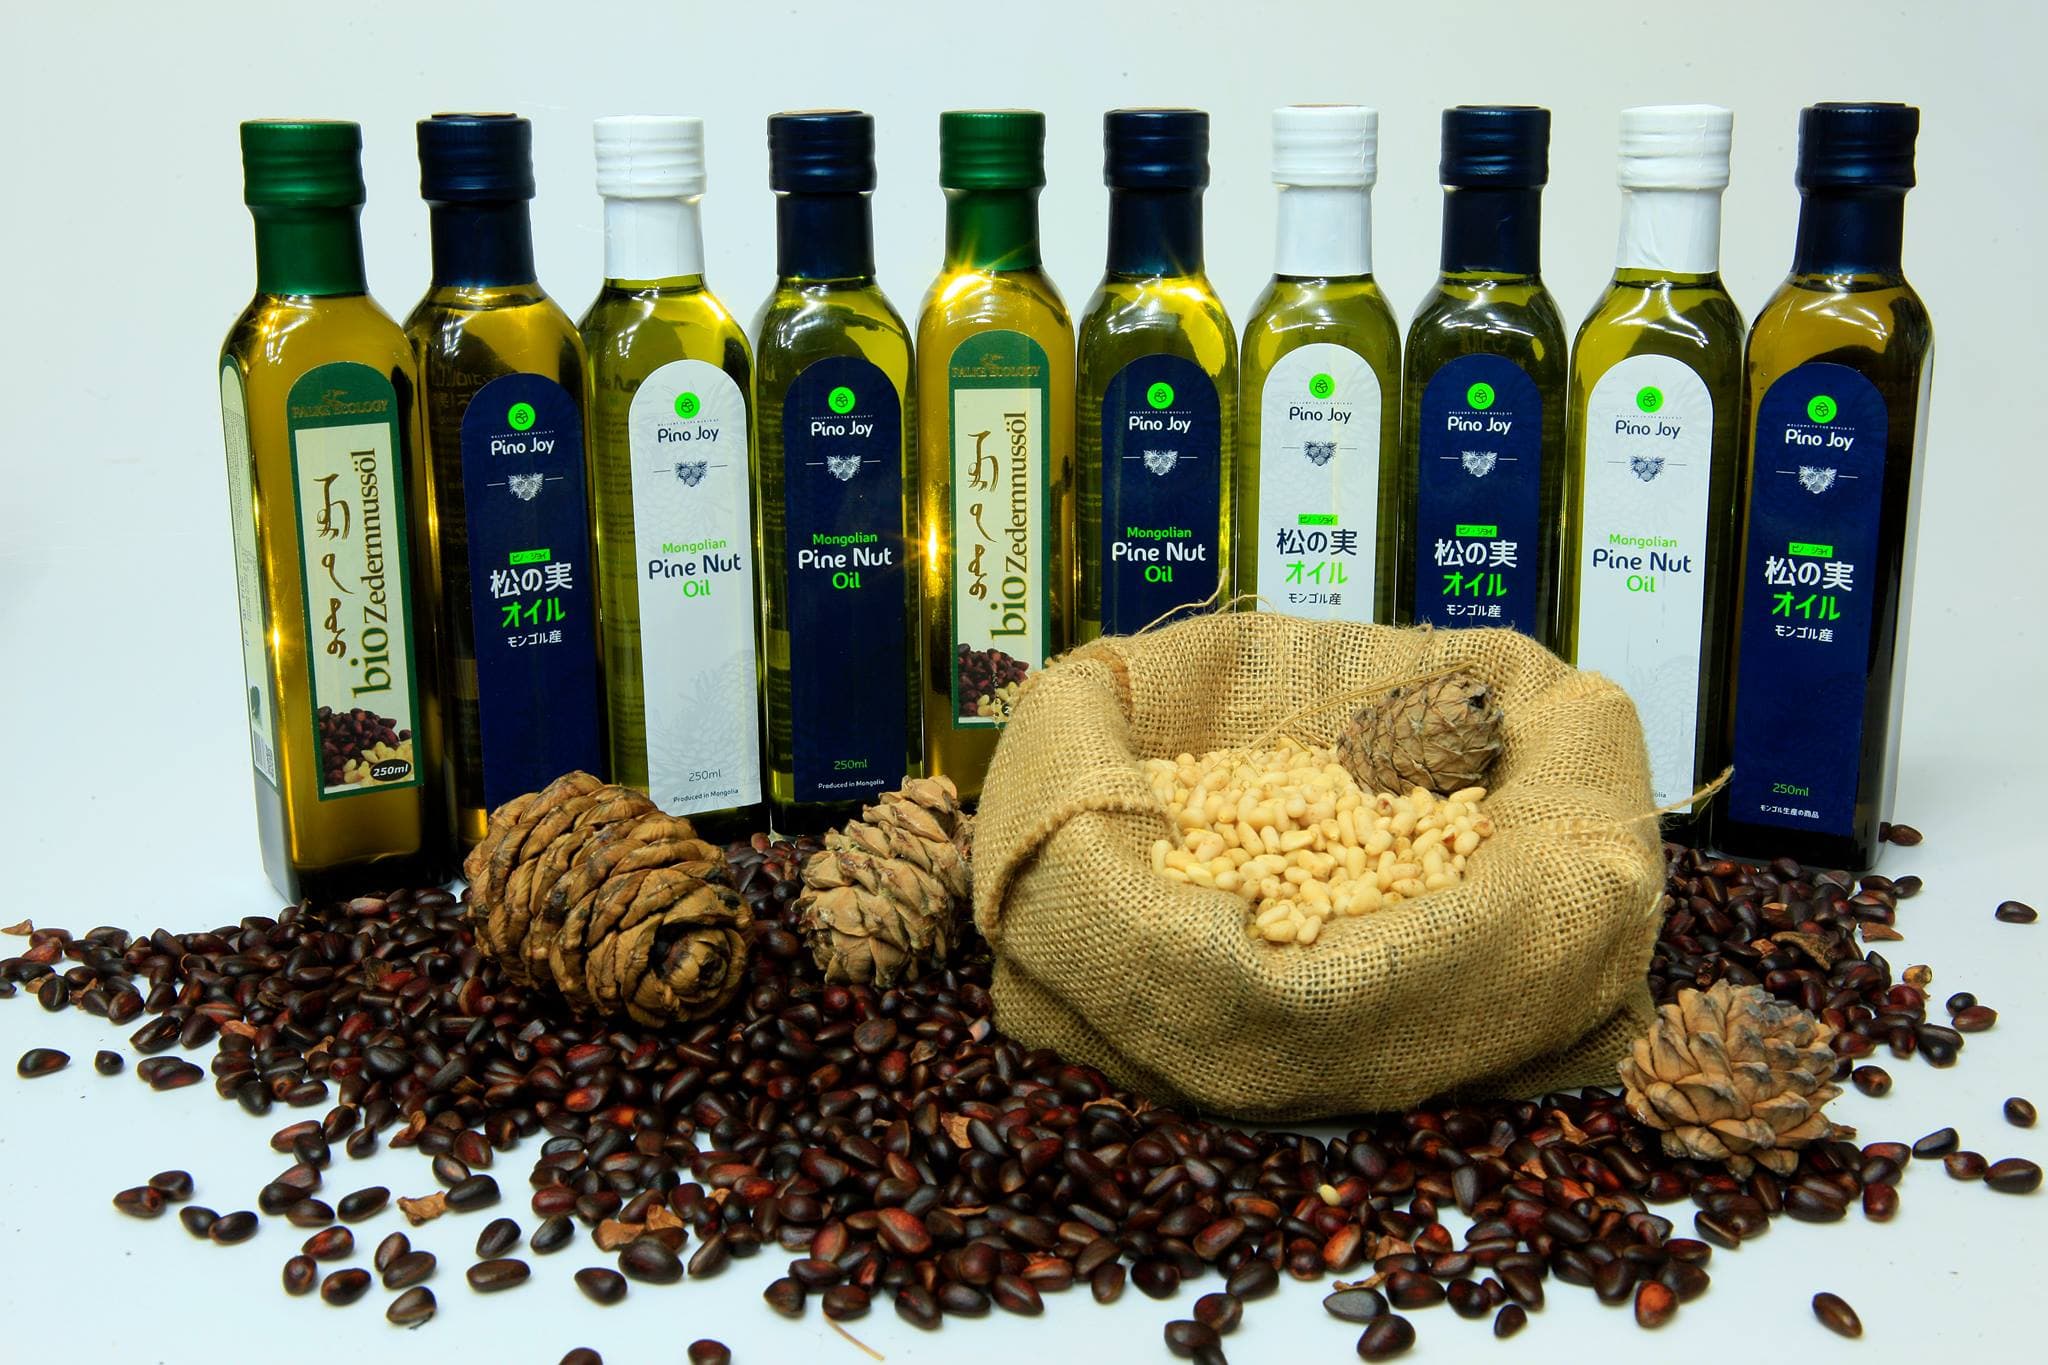 Pine nuts oil PinoJoy brand